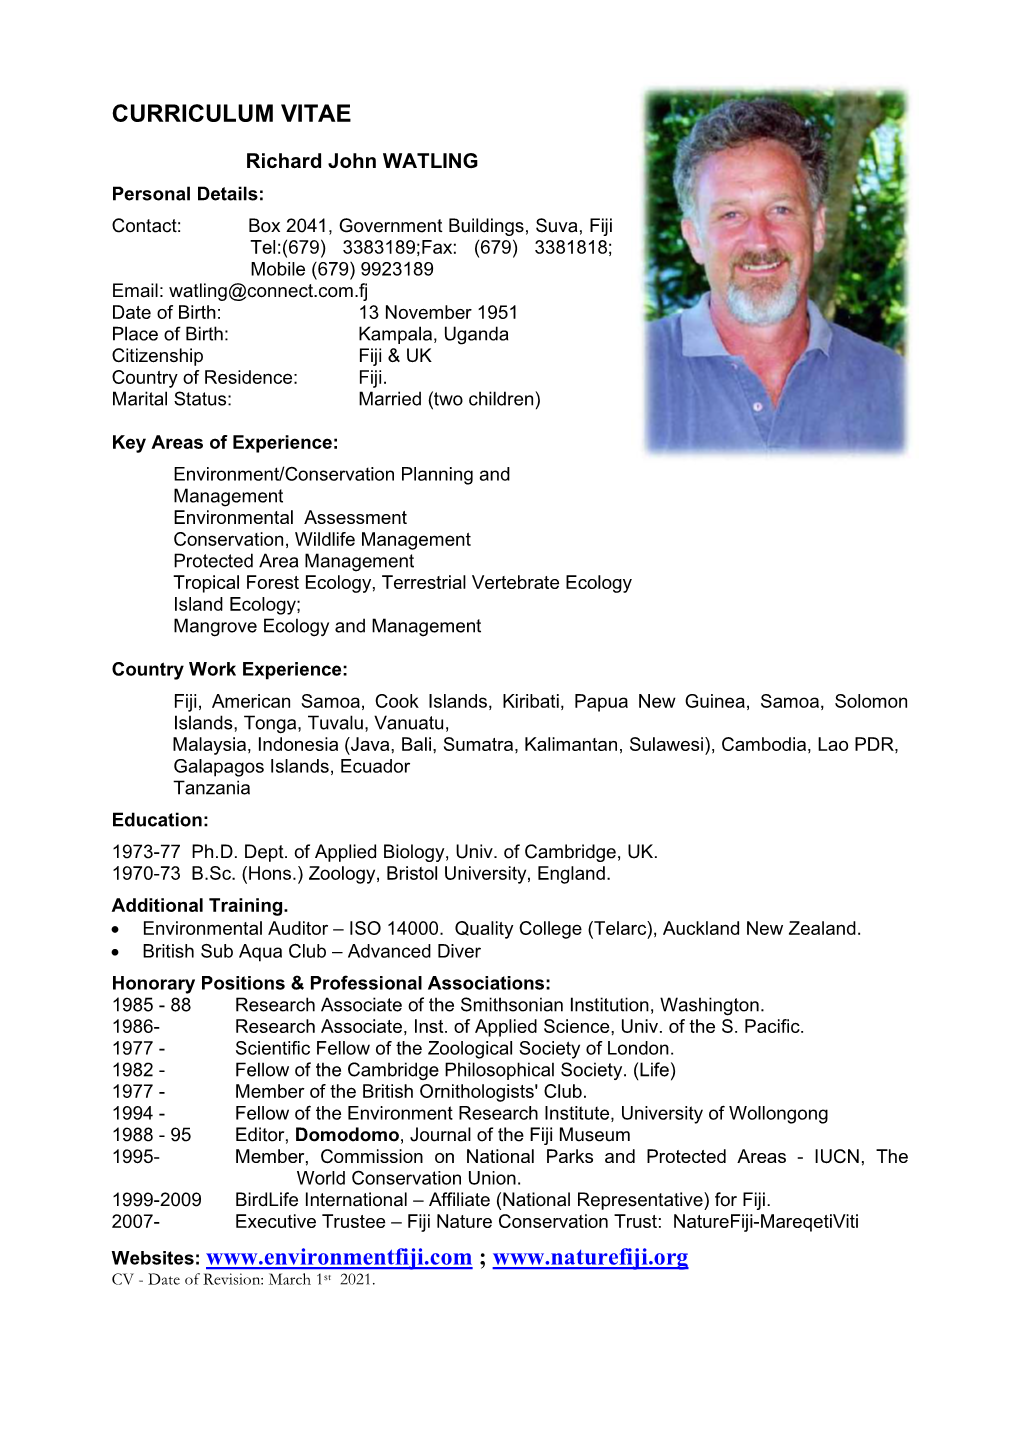 Download Dick Watling's Full CV (PDF)